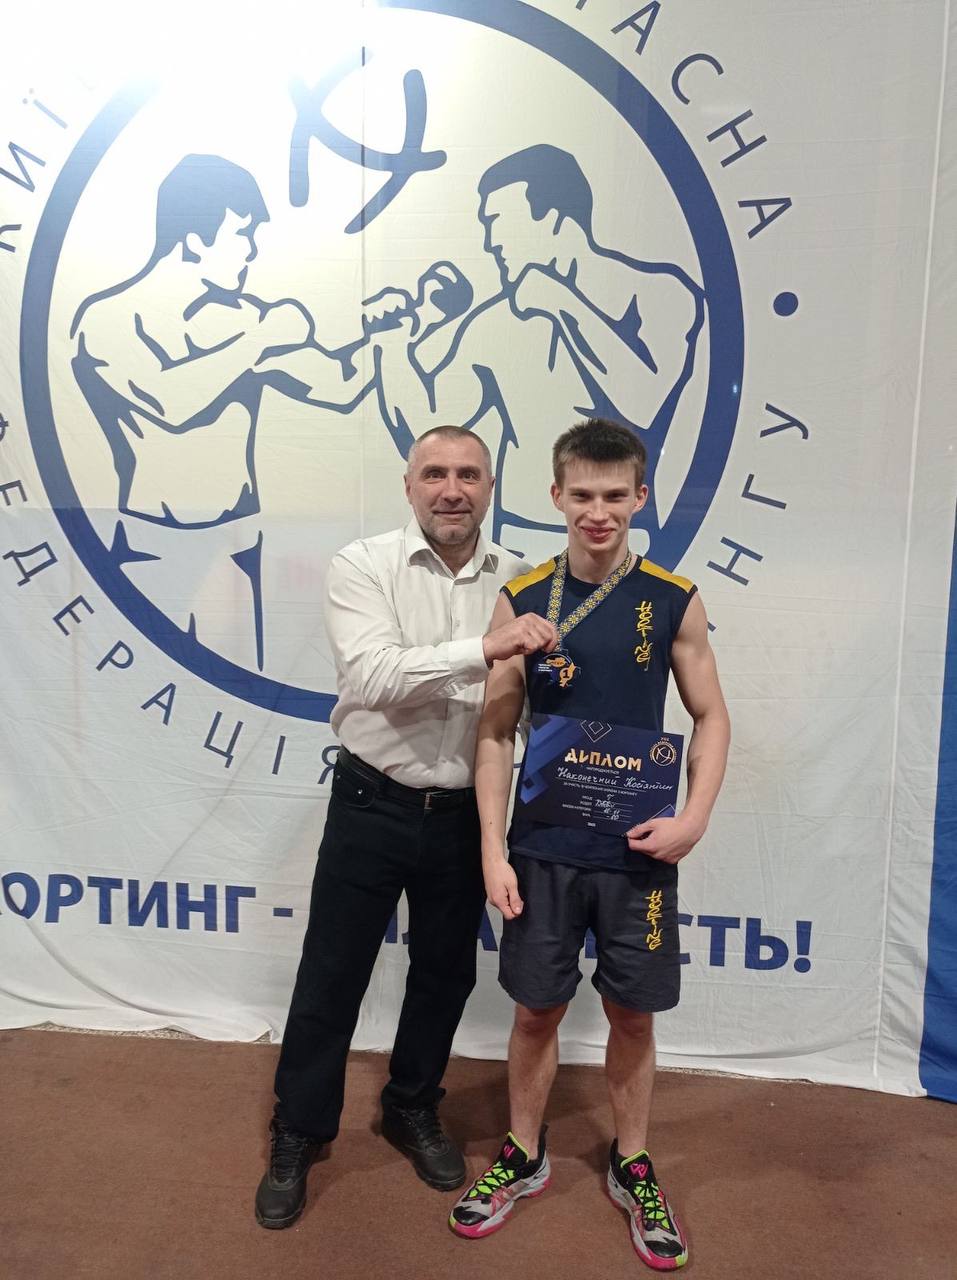 Хортингісти з Полтавщини стали переможцями і призерами чемпіонату України